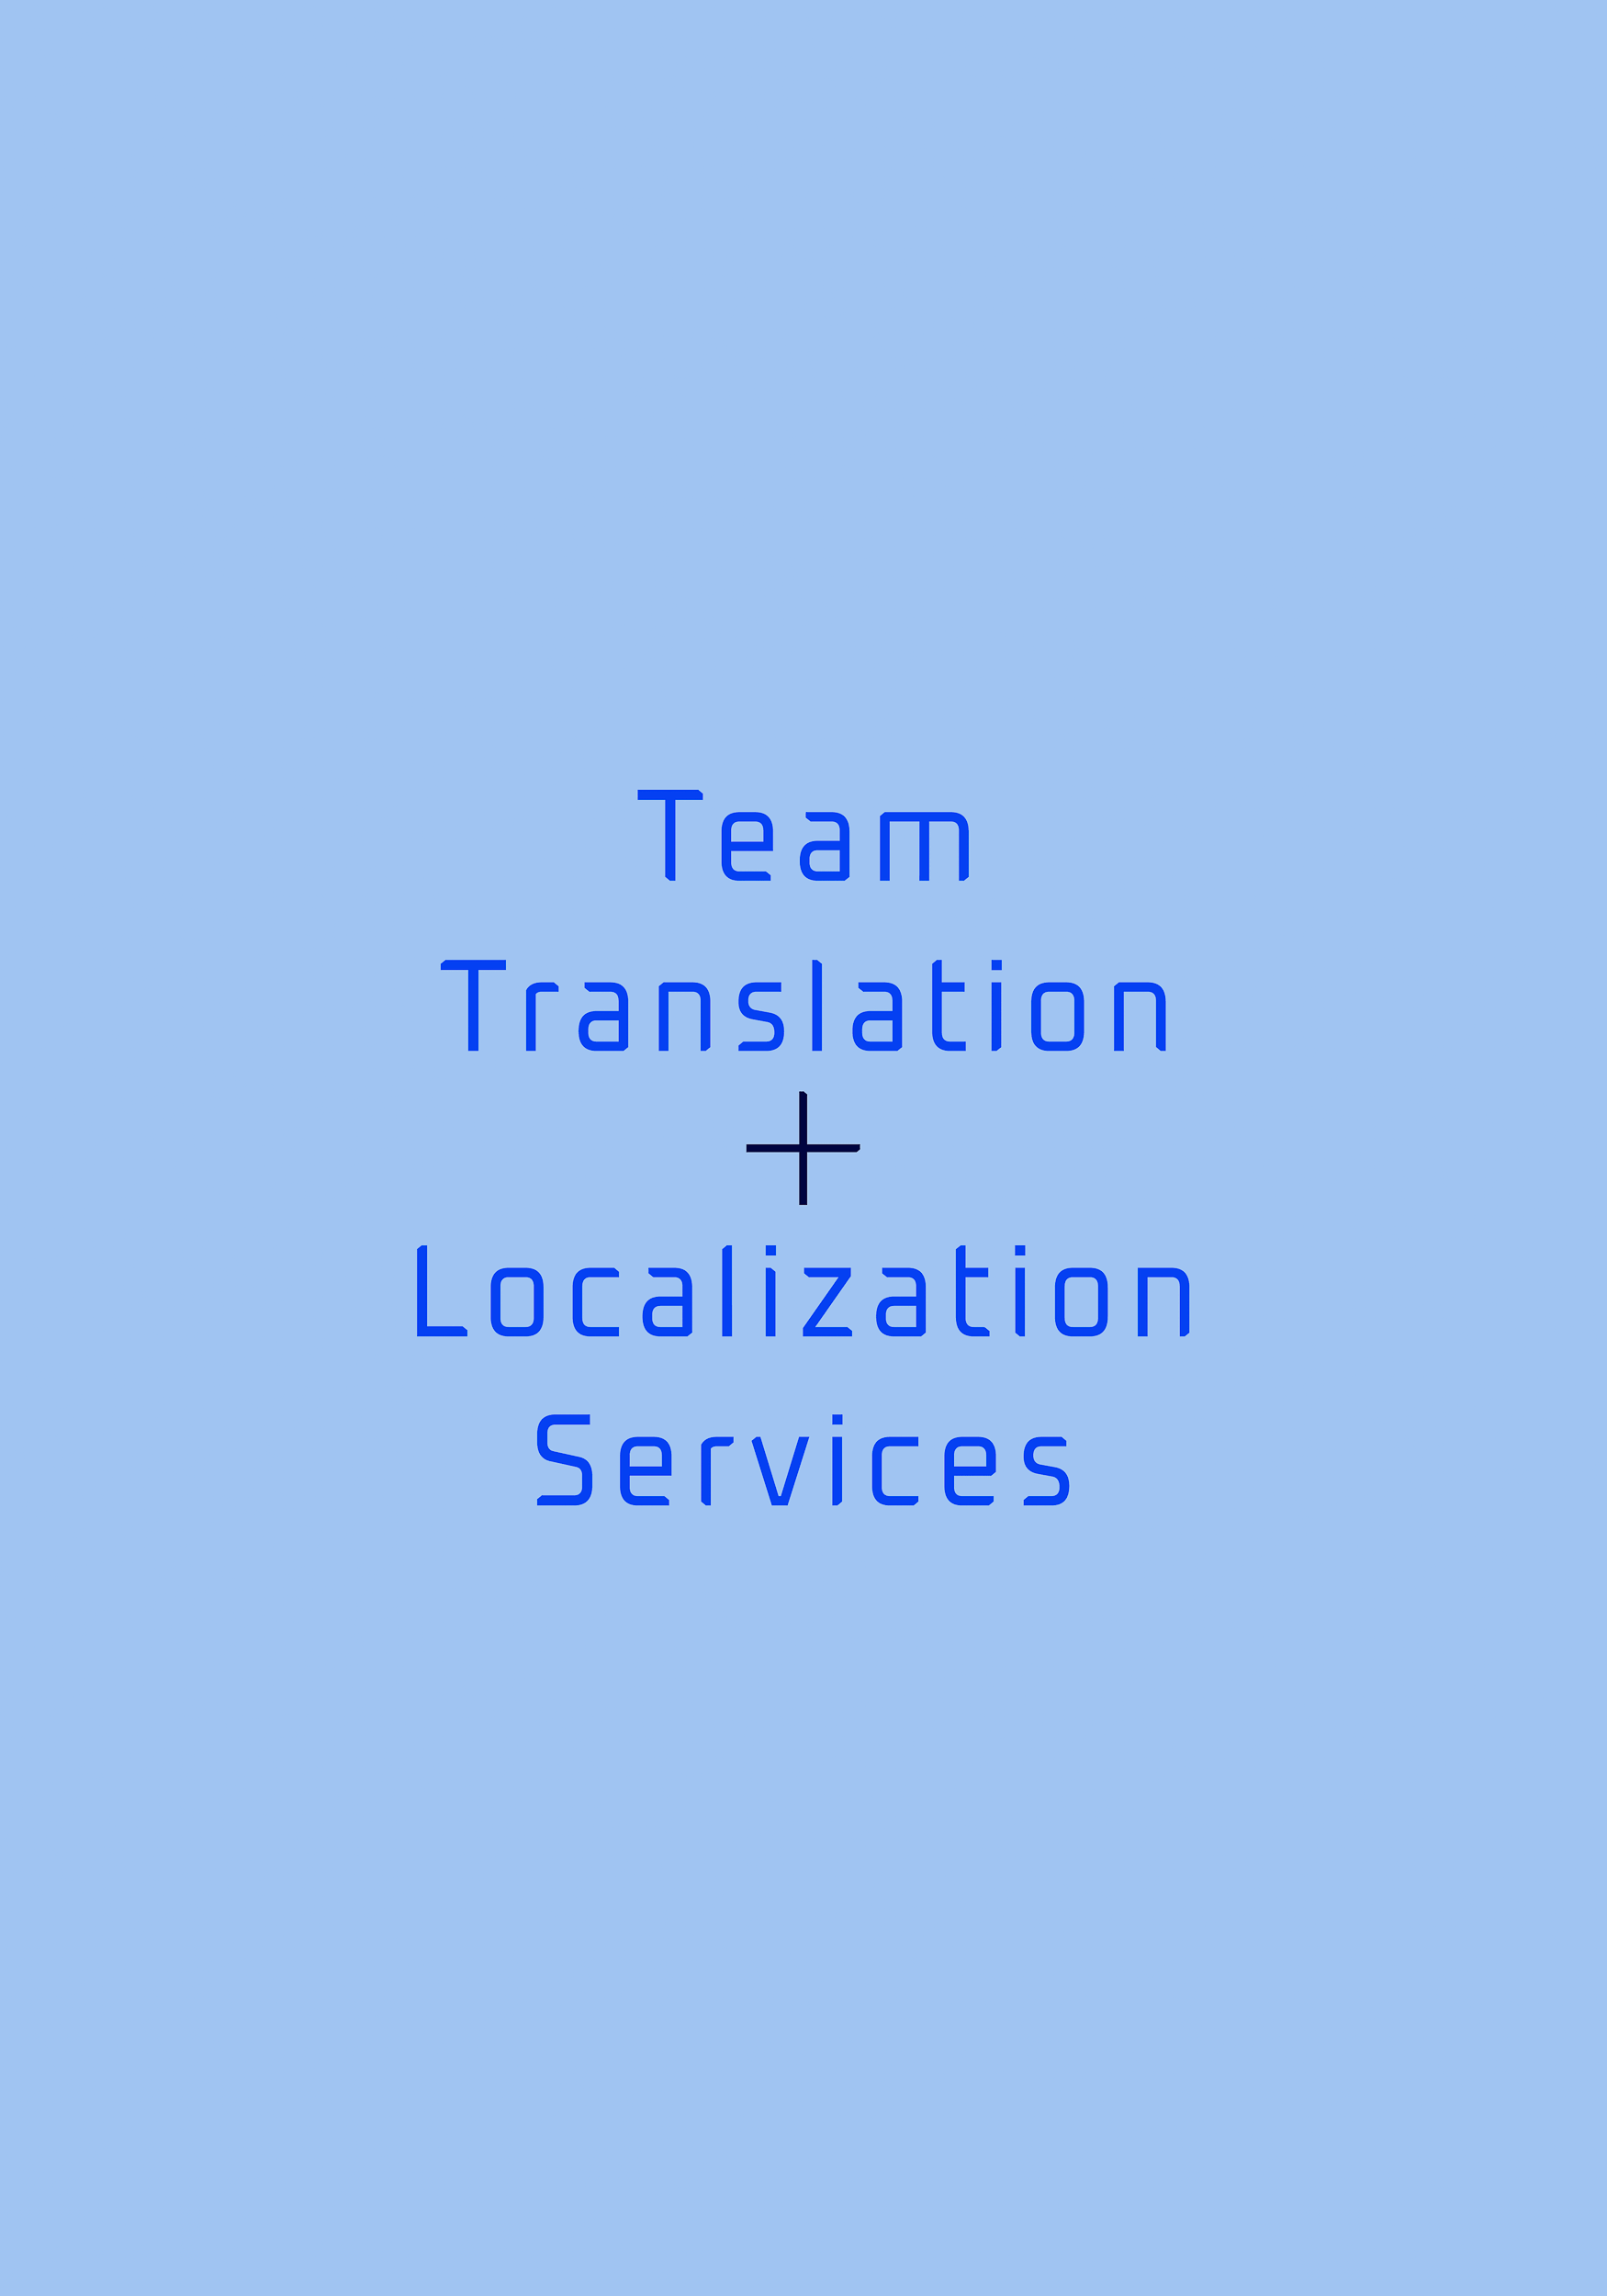 Das Sekundärlogo von Team Translation + Localization Services, das durch Corporate Branding entstand